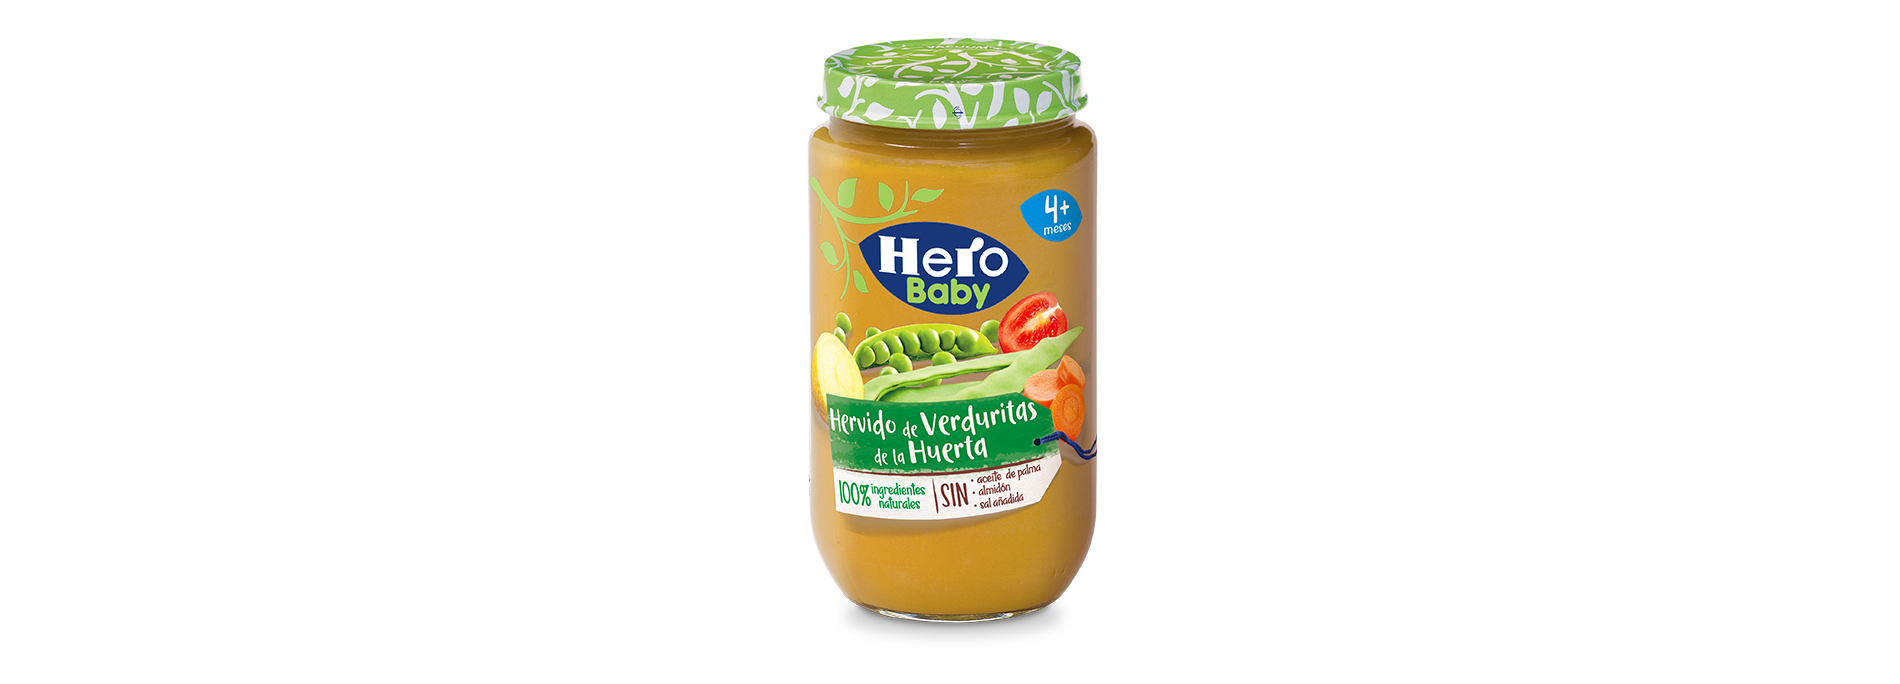 Tarrito de Hervido de Verduras Huerta, Tarritos